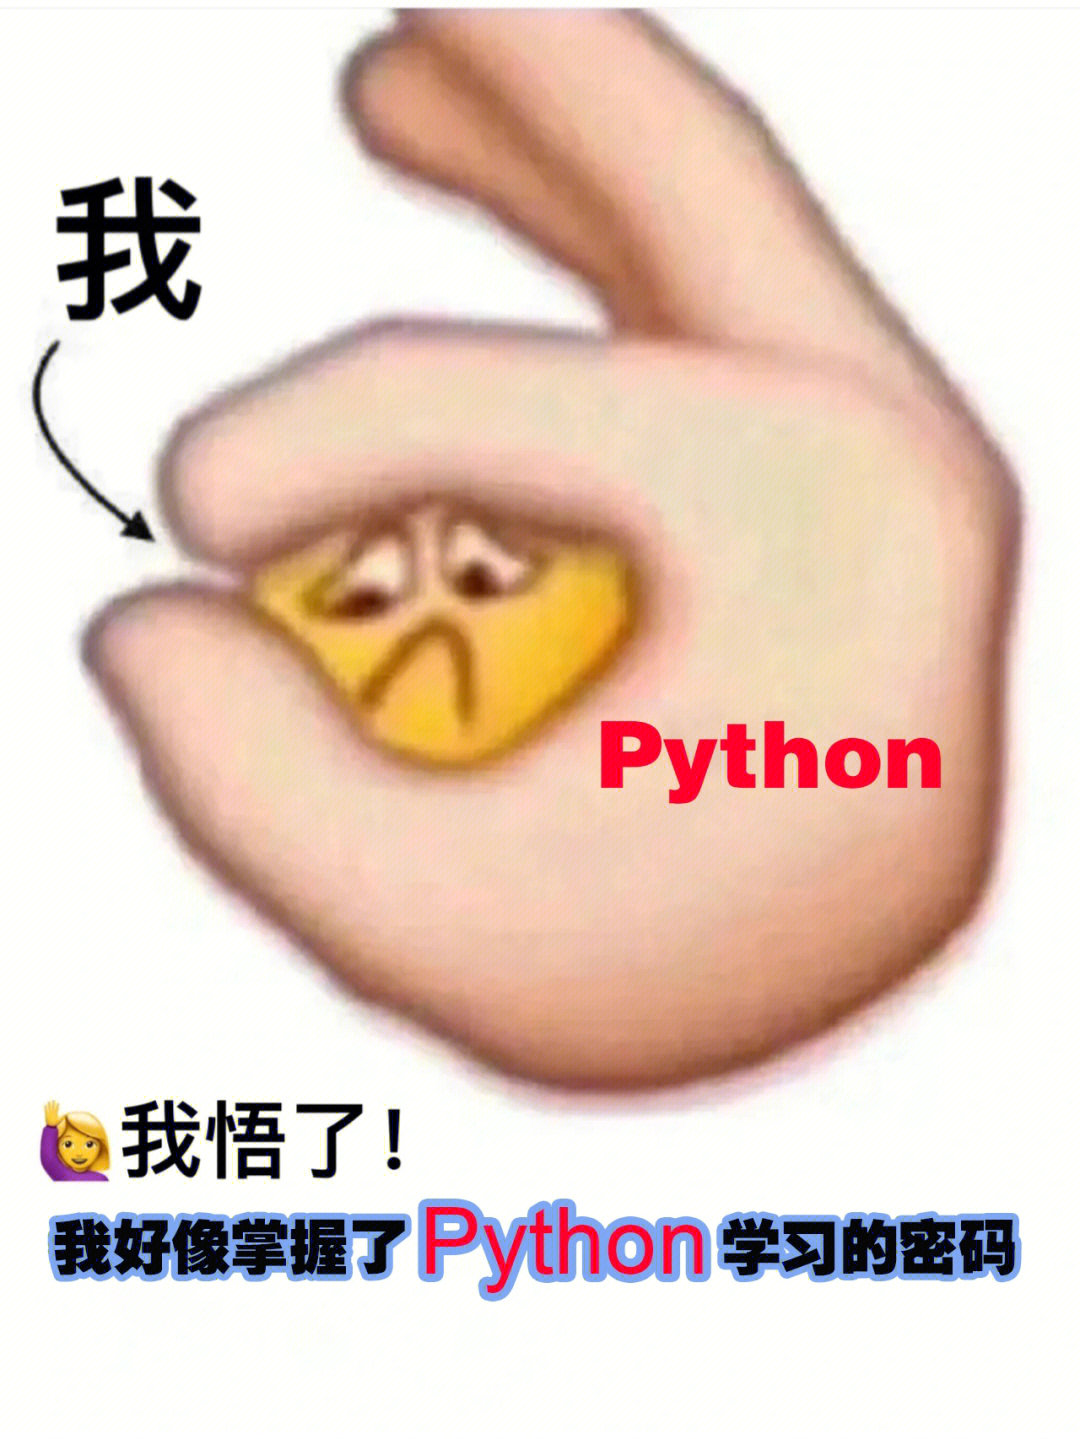 用python画表情包简单图片